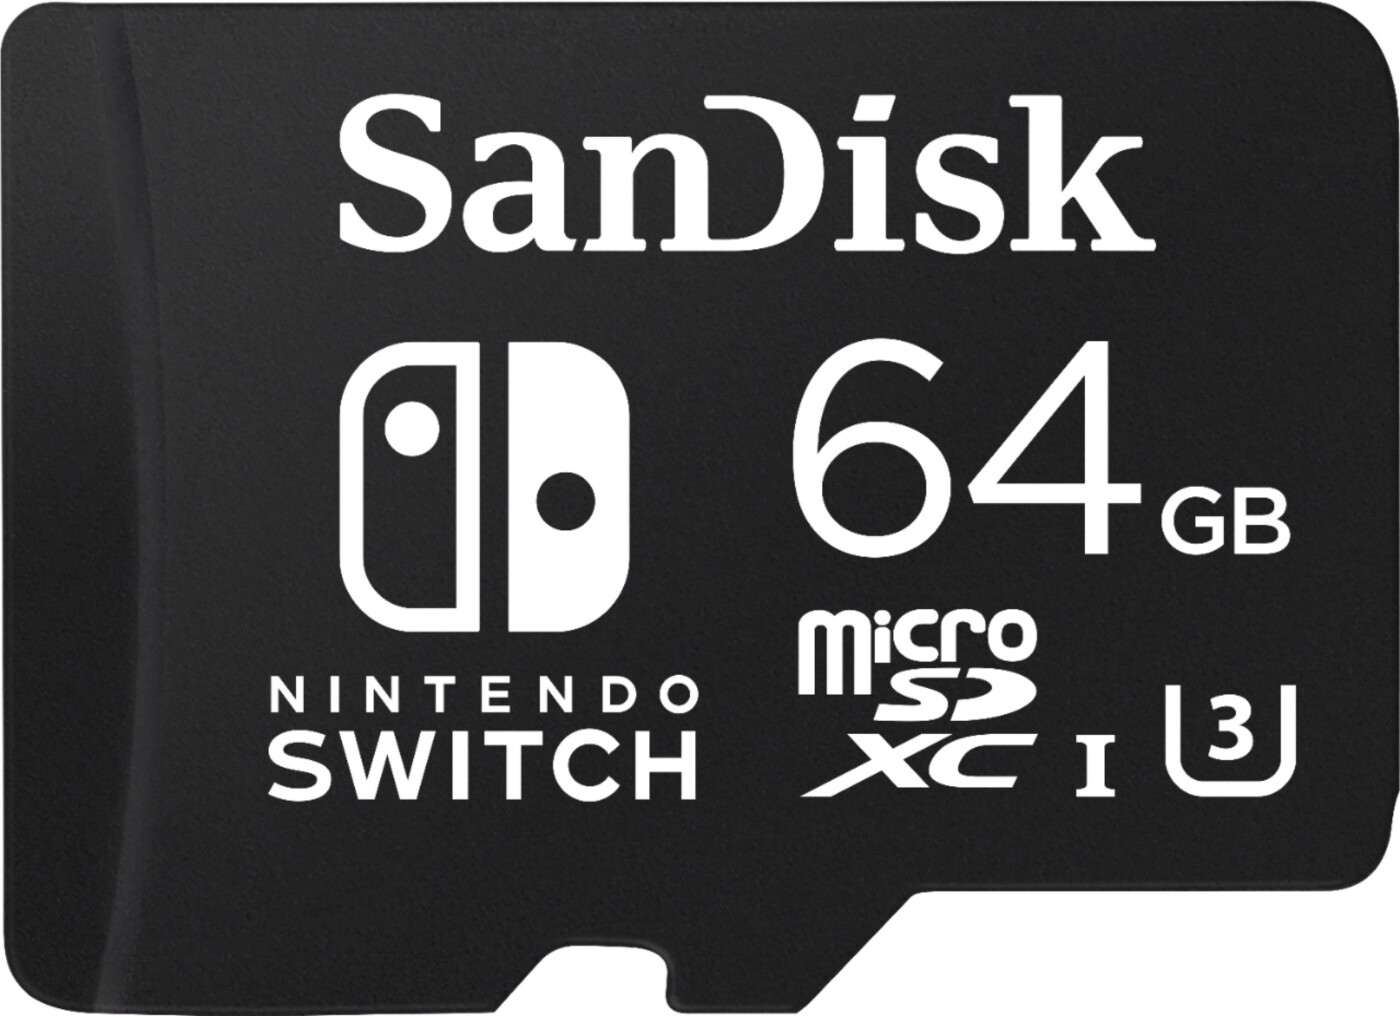 Микро память 128 гб купить. SANDISK MICROSD 128gb. SANDISK для Нинтендо свитч. Карта памяти для Нинтендо Switch. Карта памяти 1tb MICROSD SANDISK Nintendo Switch.